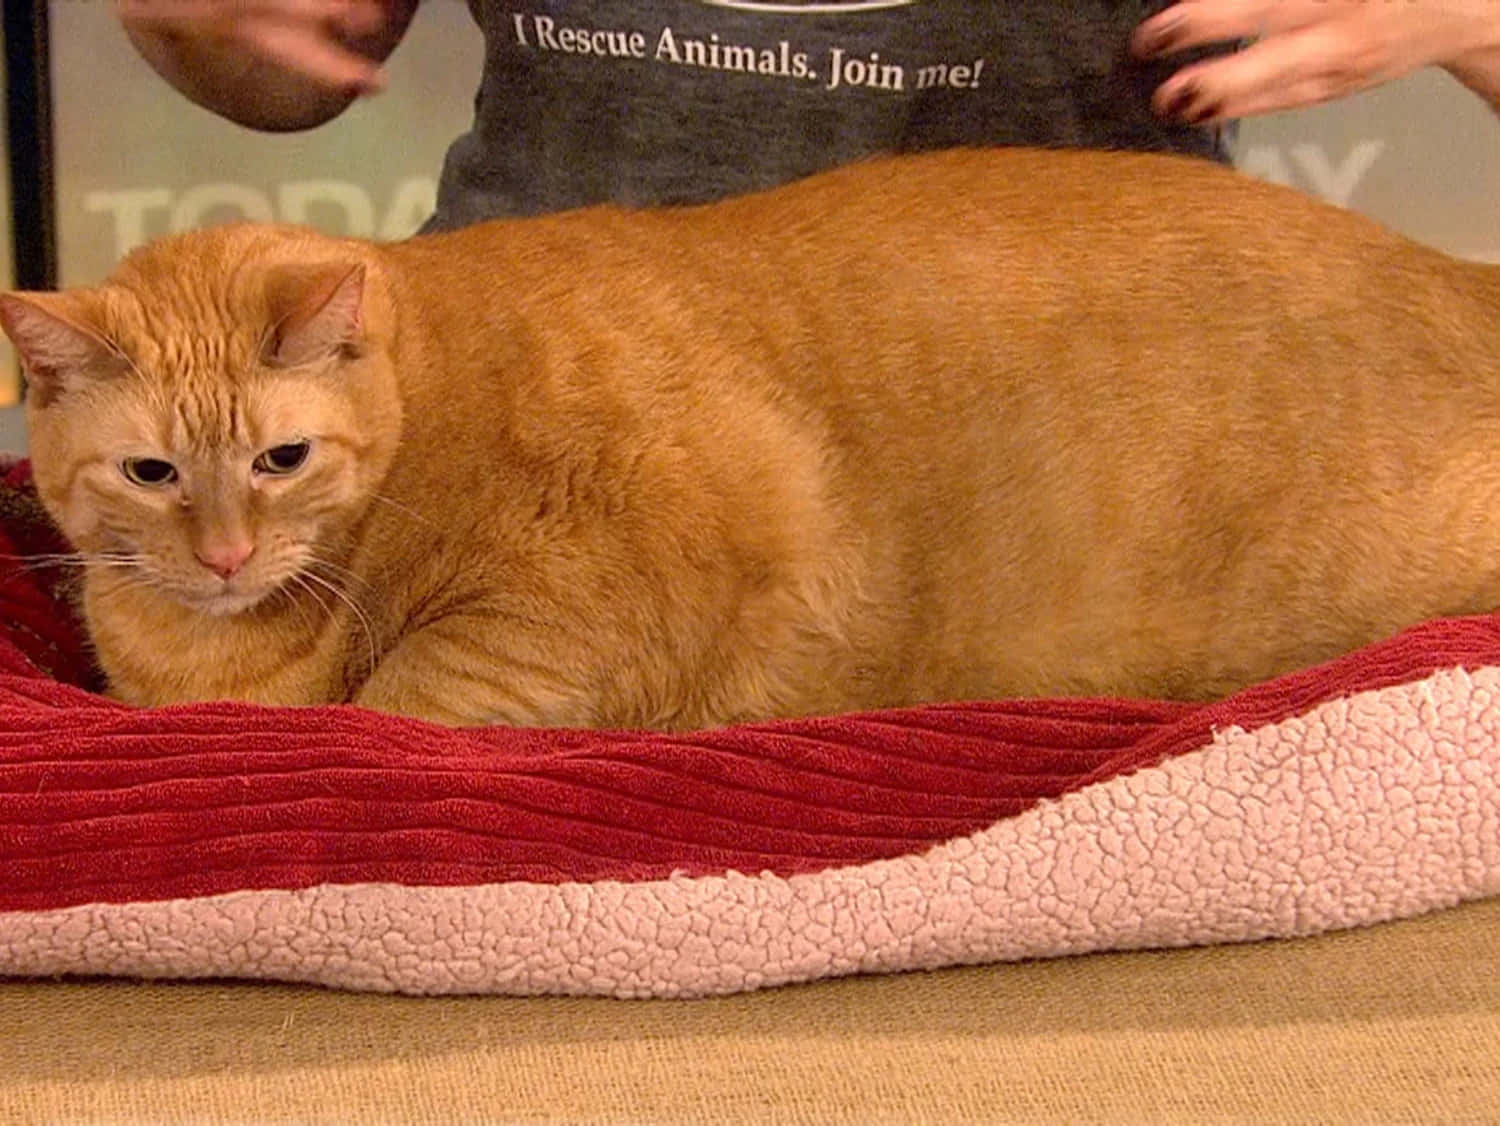 Adorable Fat Cat Enjoying a Nap Wallpaper